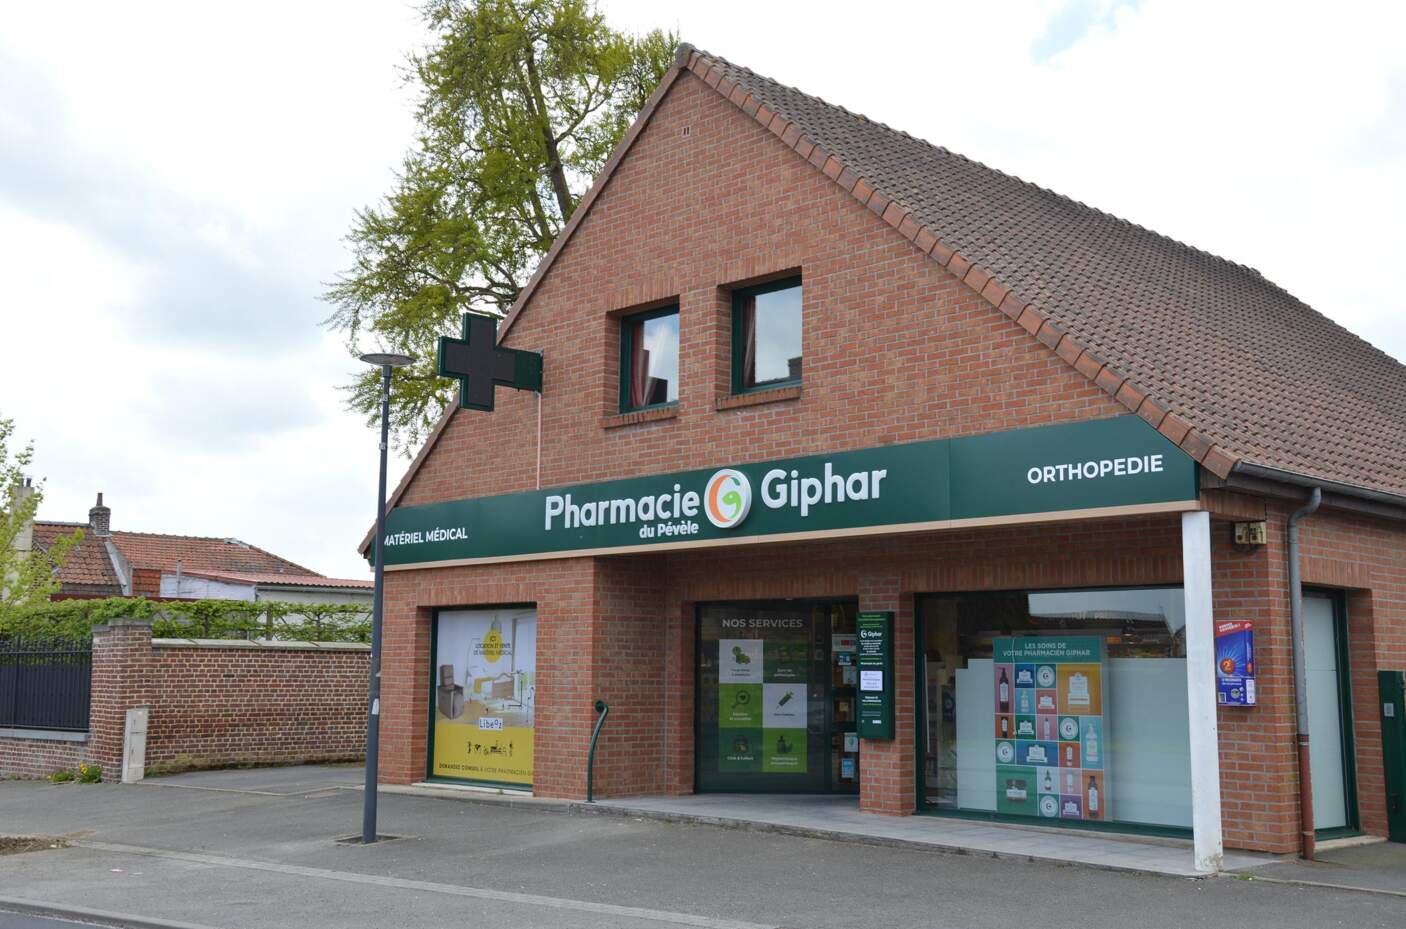 Pharmacie Giphar accueillante grâce à une vitrine et une enseigne soigneusement aménagée.